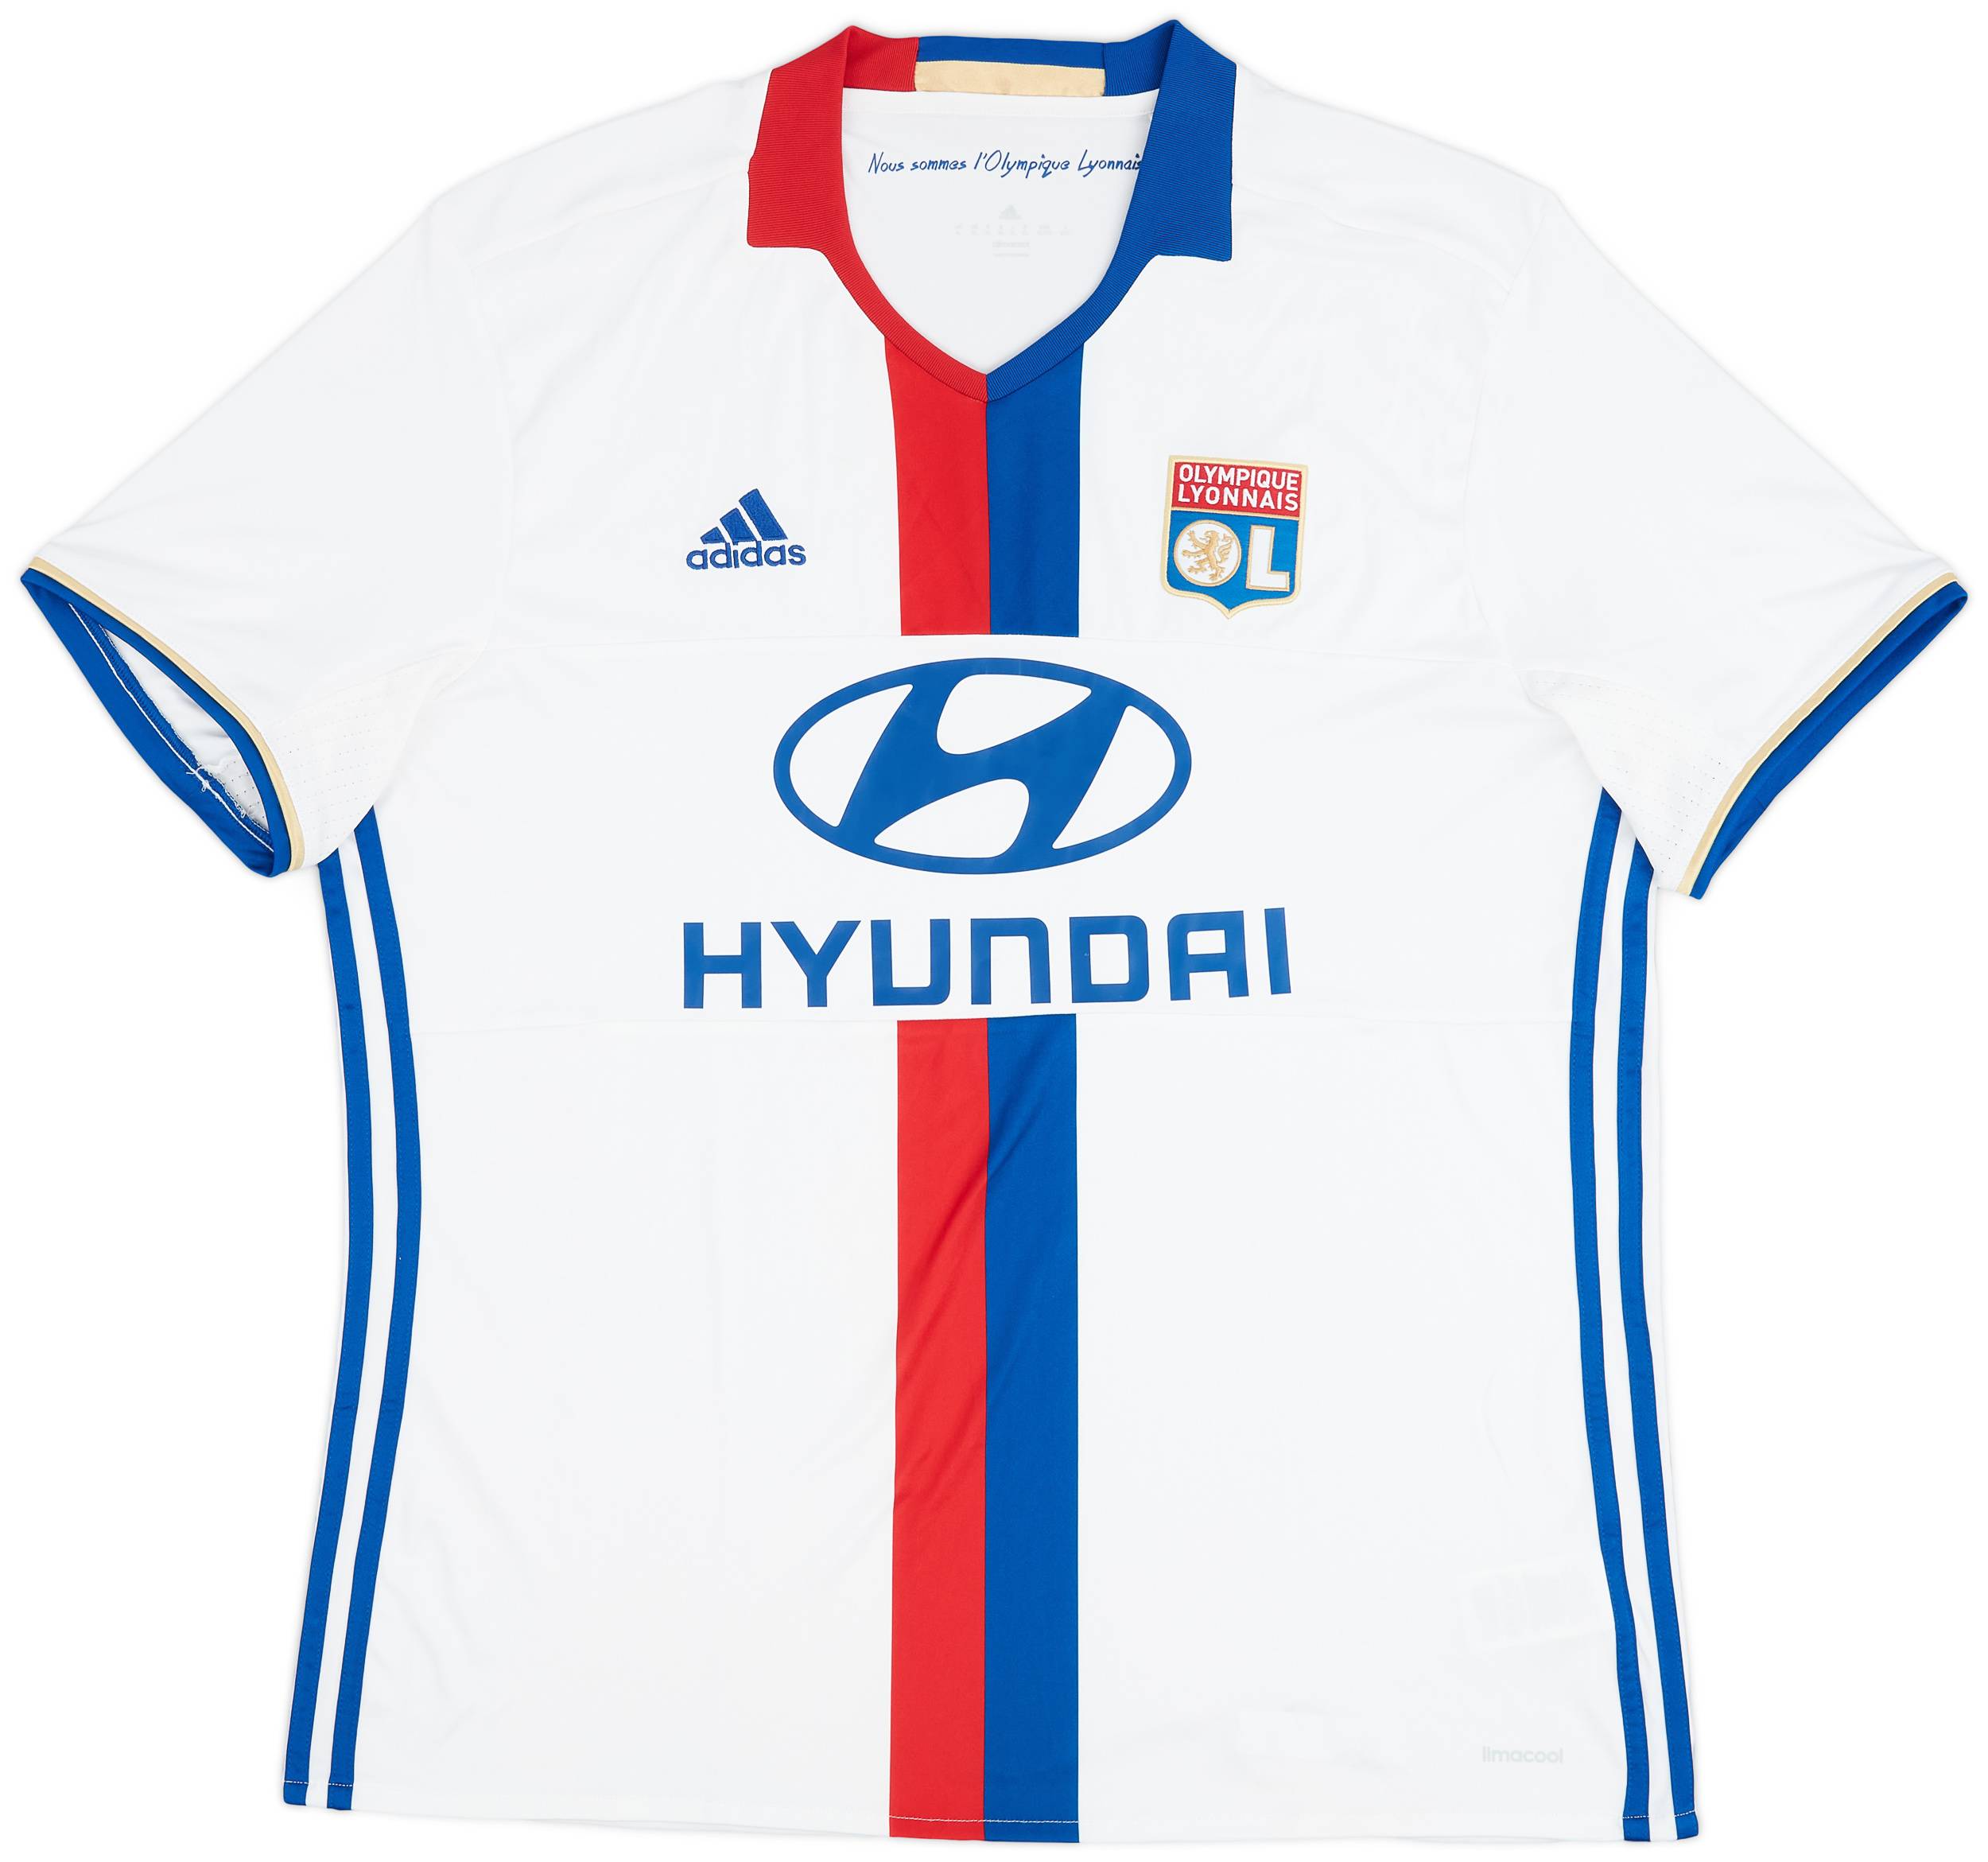 2016-17 Lyon Home Shirt - 9/10 - (XL)